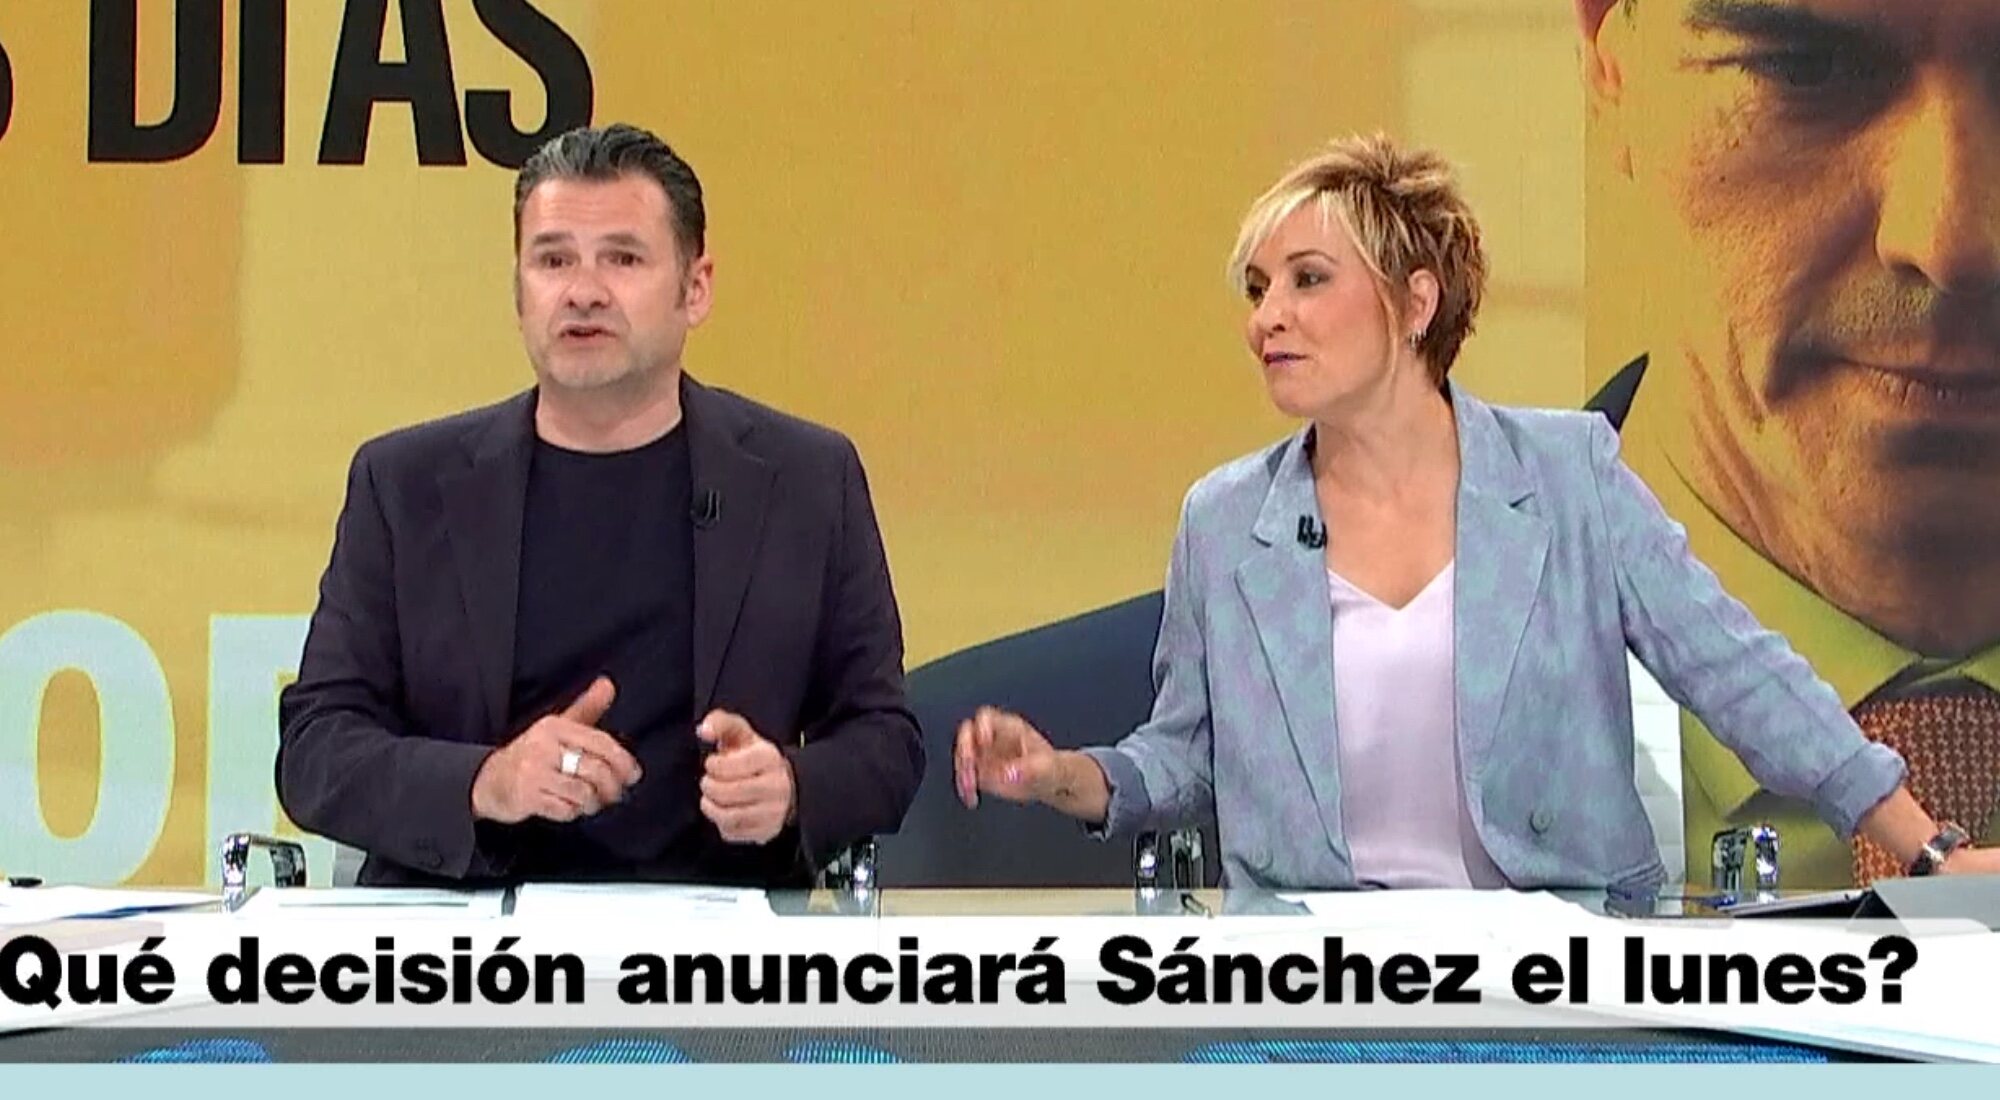 Iñaki López y Cristina Pardo en 'Más vale tarde'